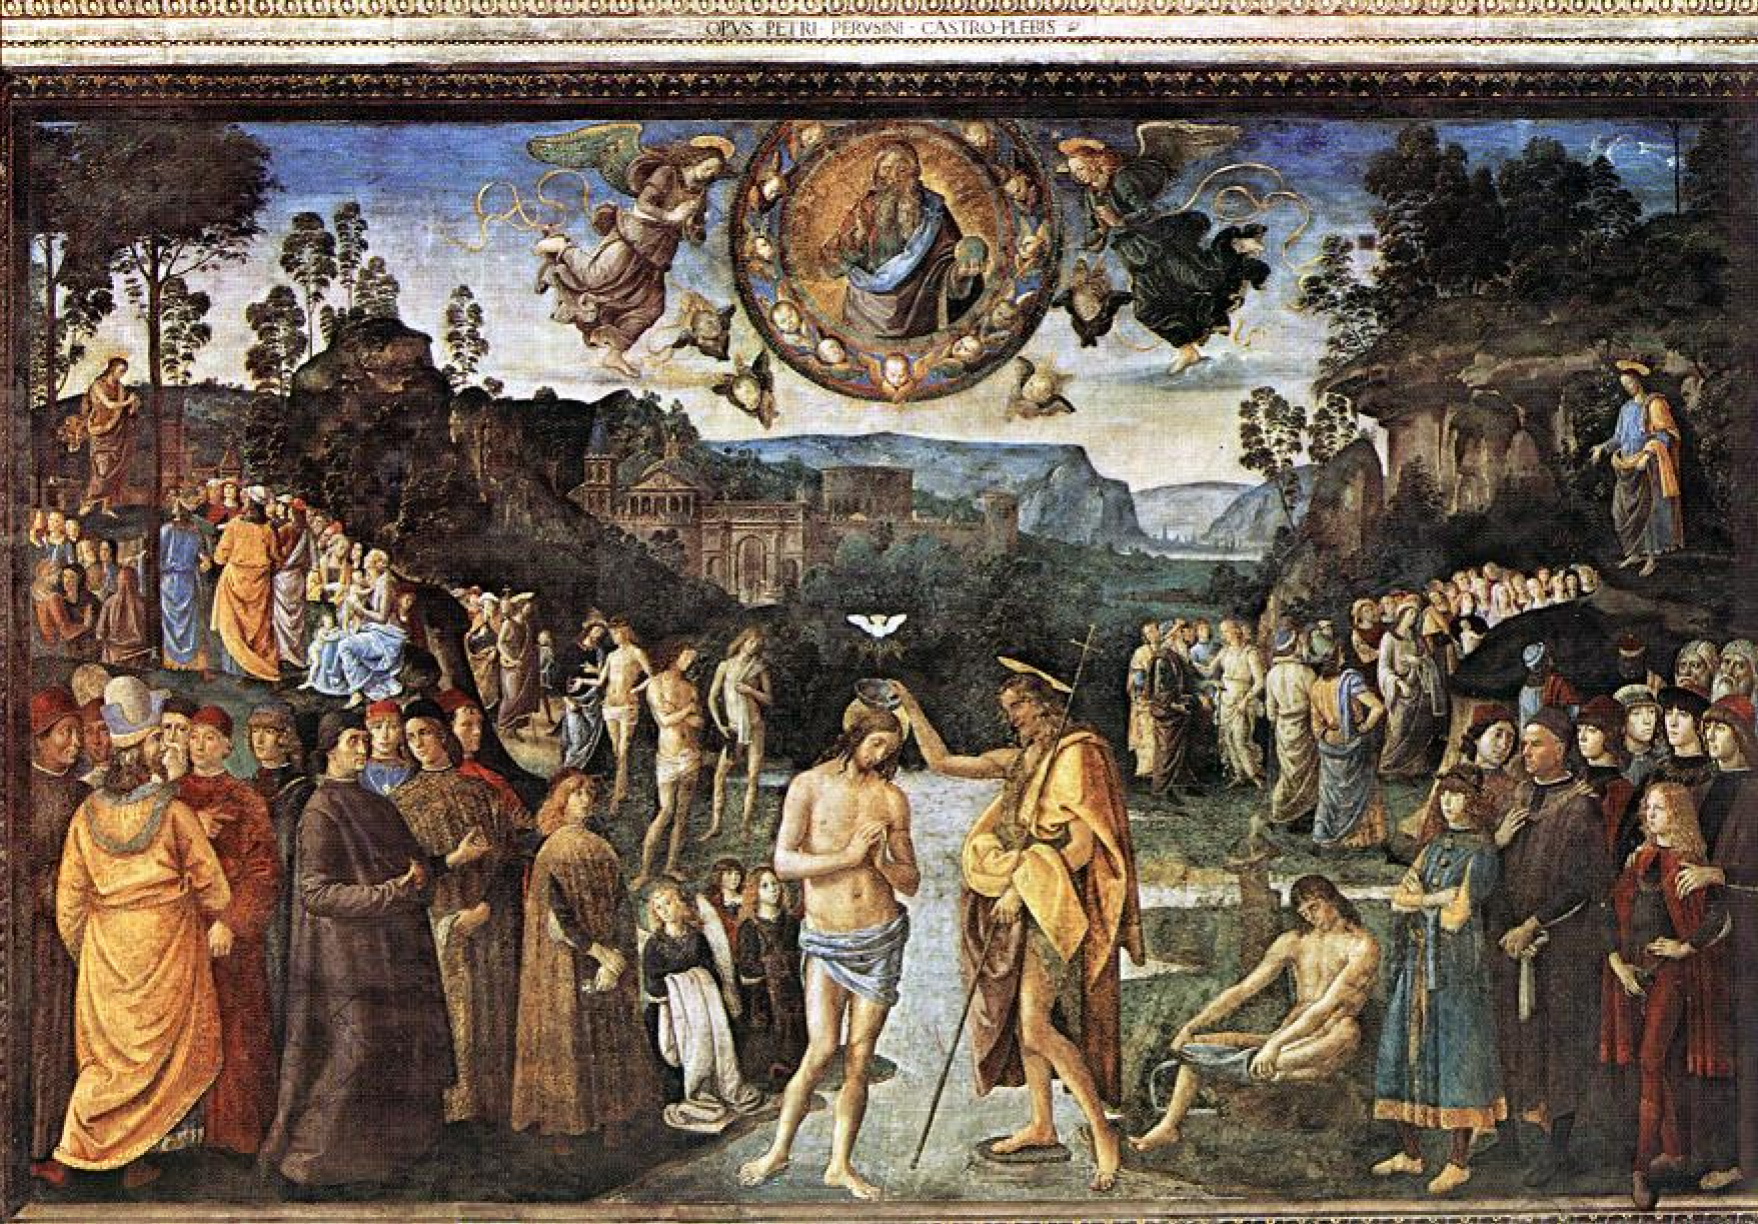 Il docufilm sul Perugino verrà proiettato al cinema per i 500 anni dalla sua morte